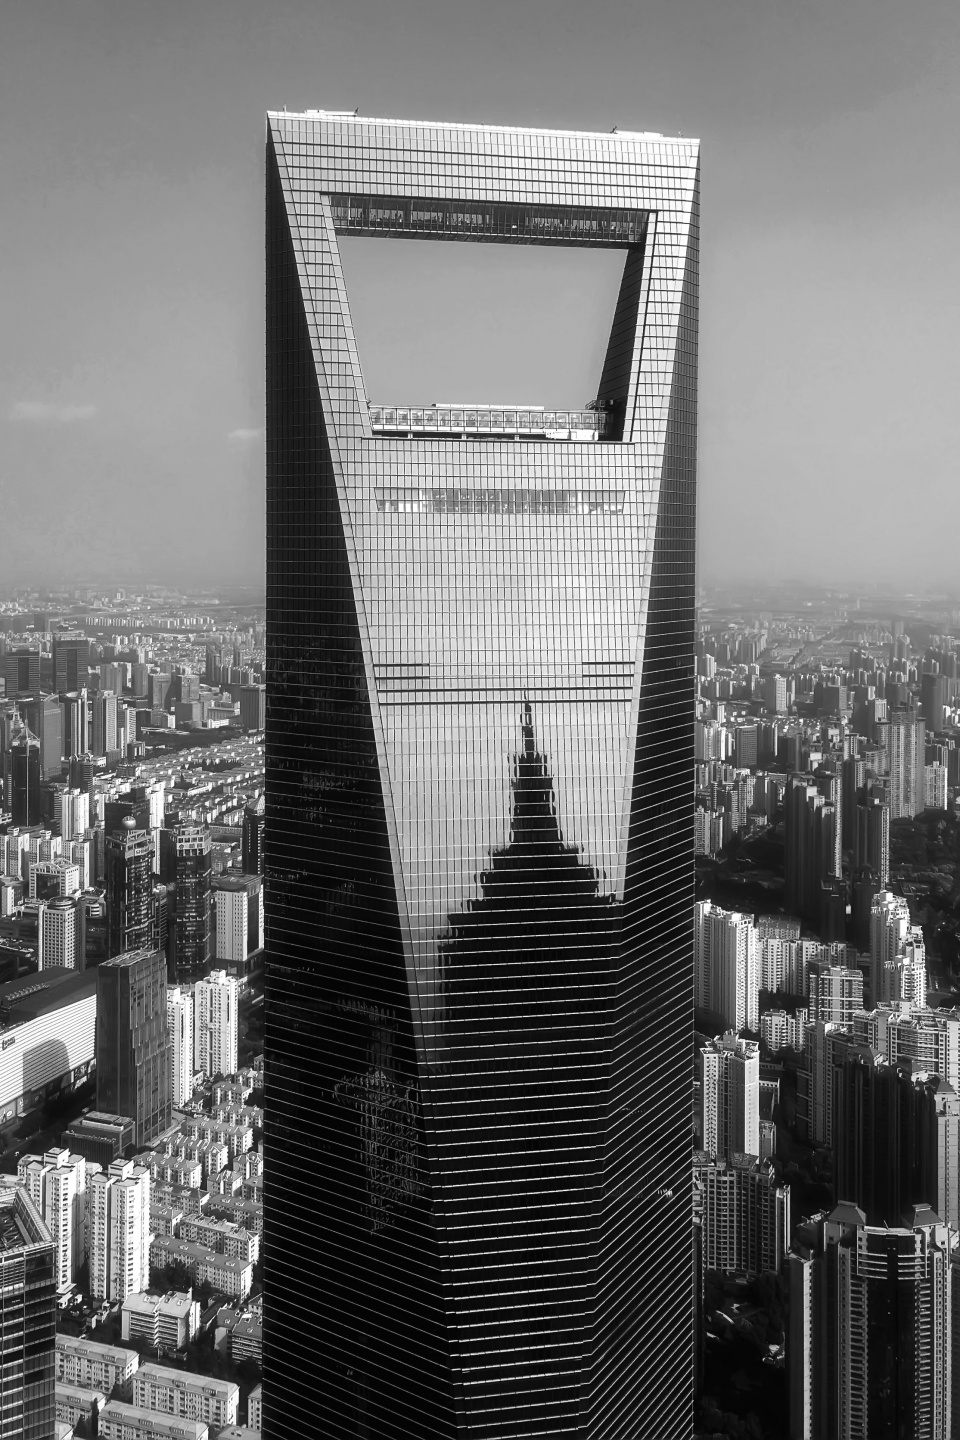 中国经济最发达的城市,风景也独具特色